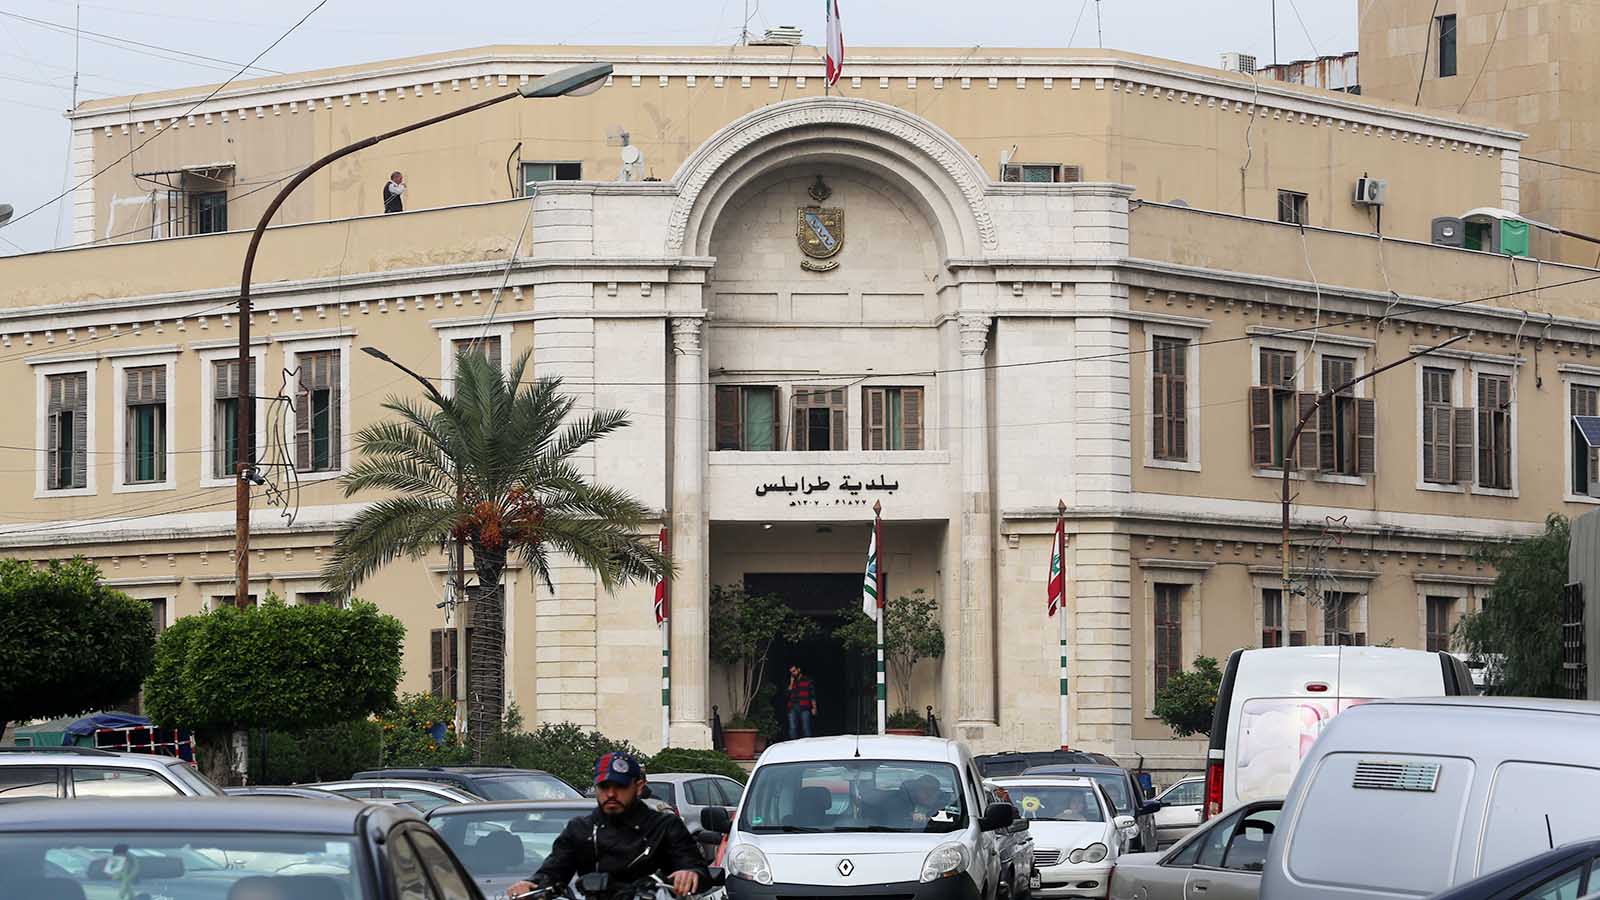 لماذا بلدية طرابلس معطلة؟.. "الريس" واثق بعمله